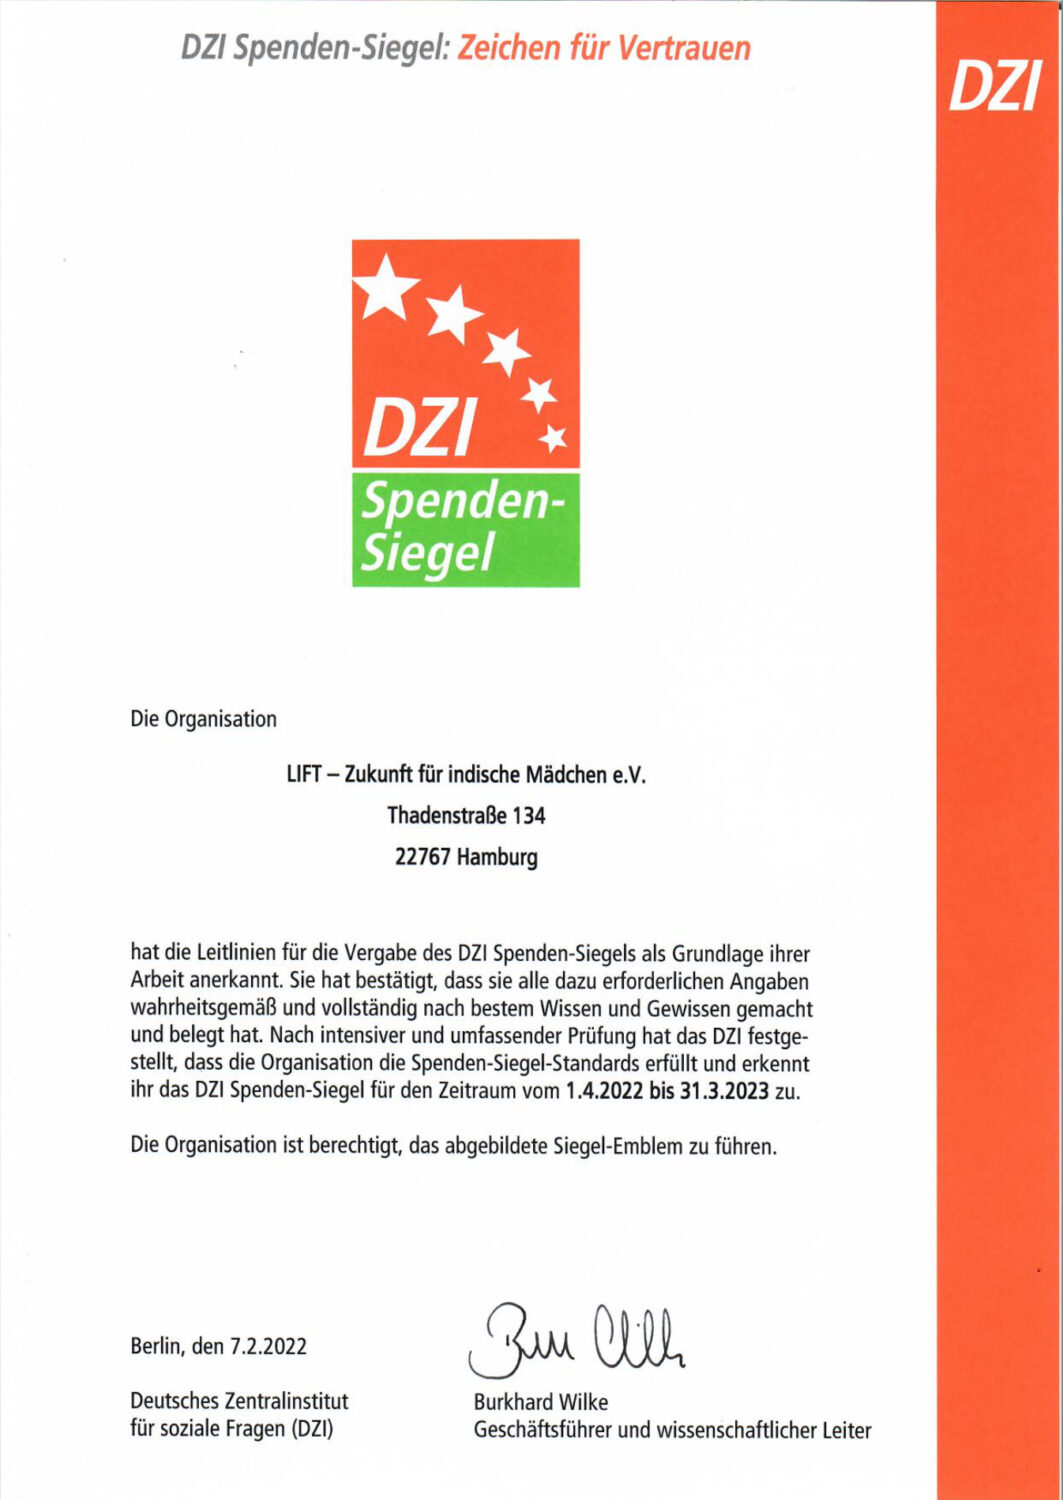 DZI Spenden-Siegel bis 2023 erneuert